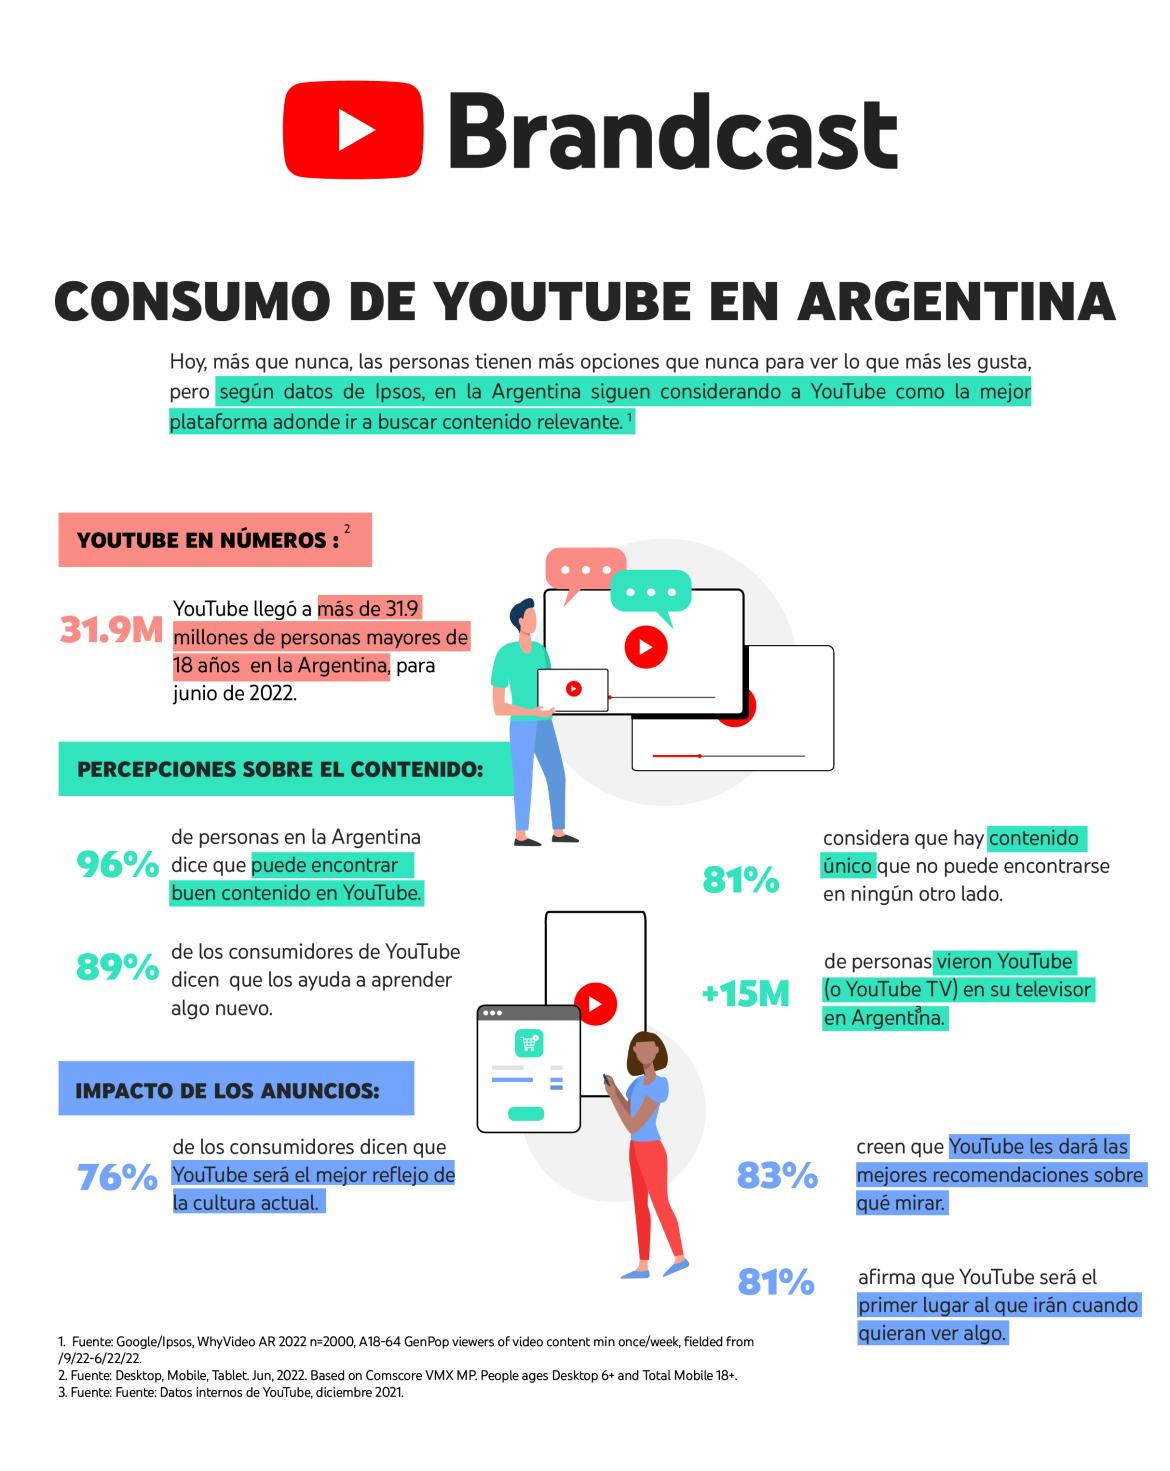 Los argentinos prefieren YouTube para consumir contenido. Foto: Prensa.